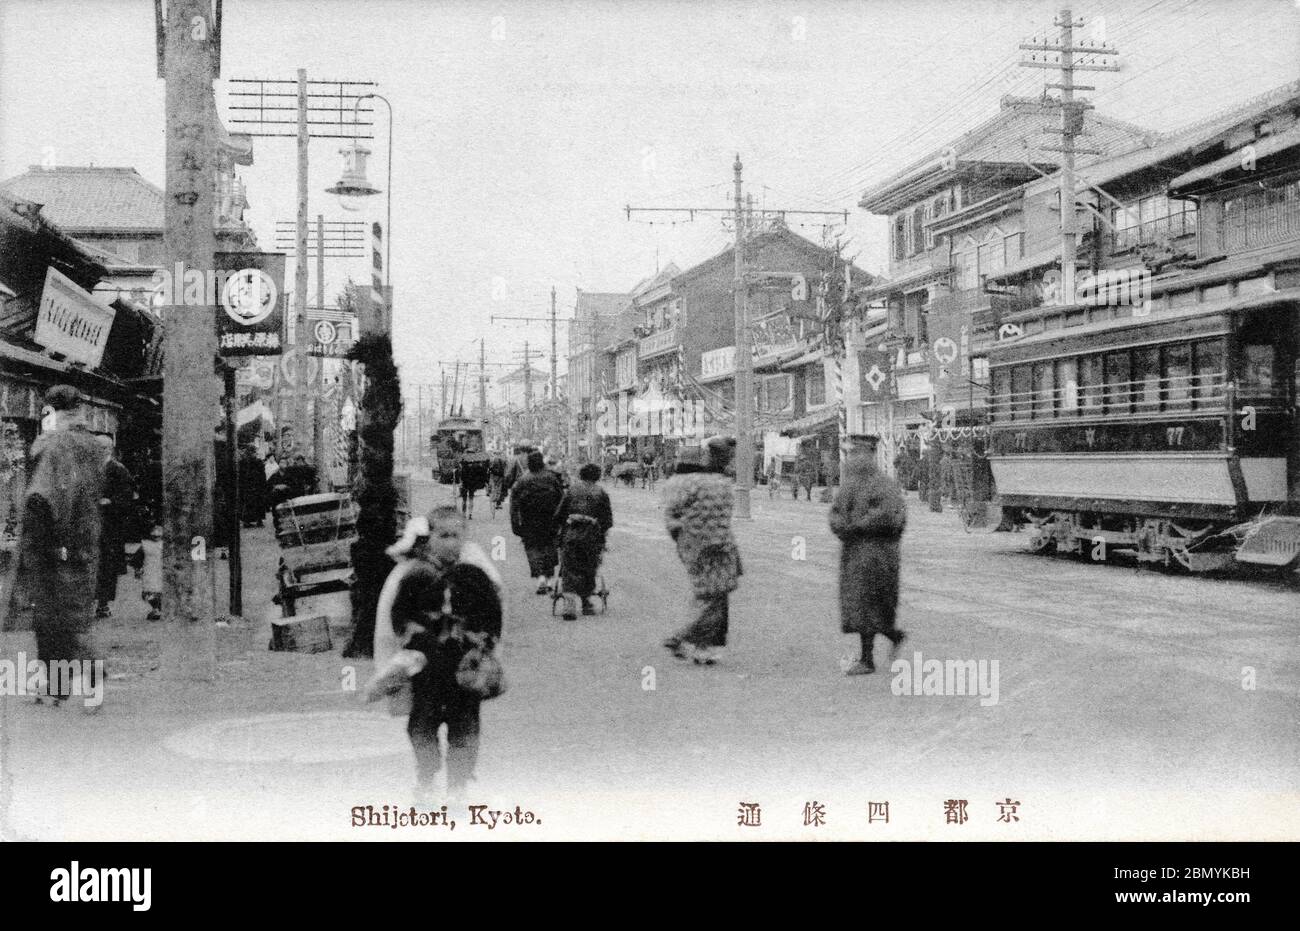 [ 1910 Japan - Shijo-dori, Kyoto ] - Fußgänger und Straßenbahnen auf Shijo-dori (四条通) in Kyoto, irgendwann zwischen 1912 (Taisho 1) und 1918 (Taisho 7). Vintage-Postkarte des 20. Jahrhunderts. Stockfoto